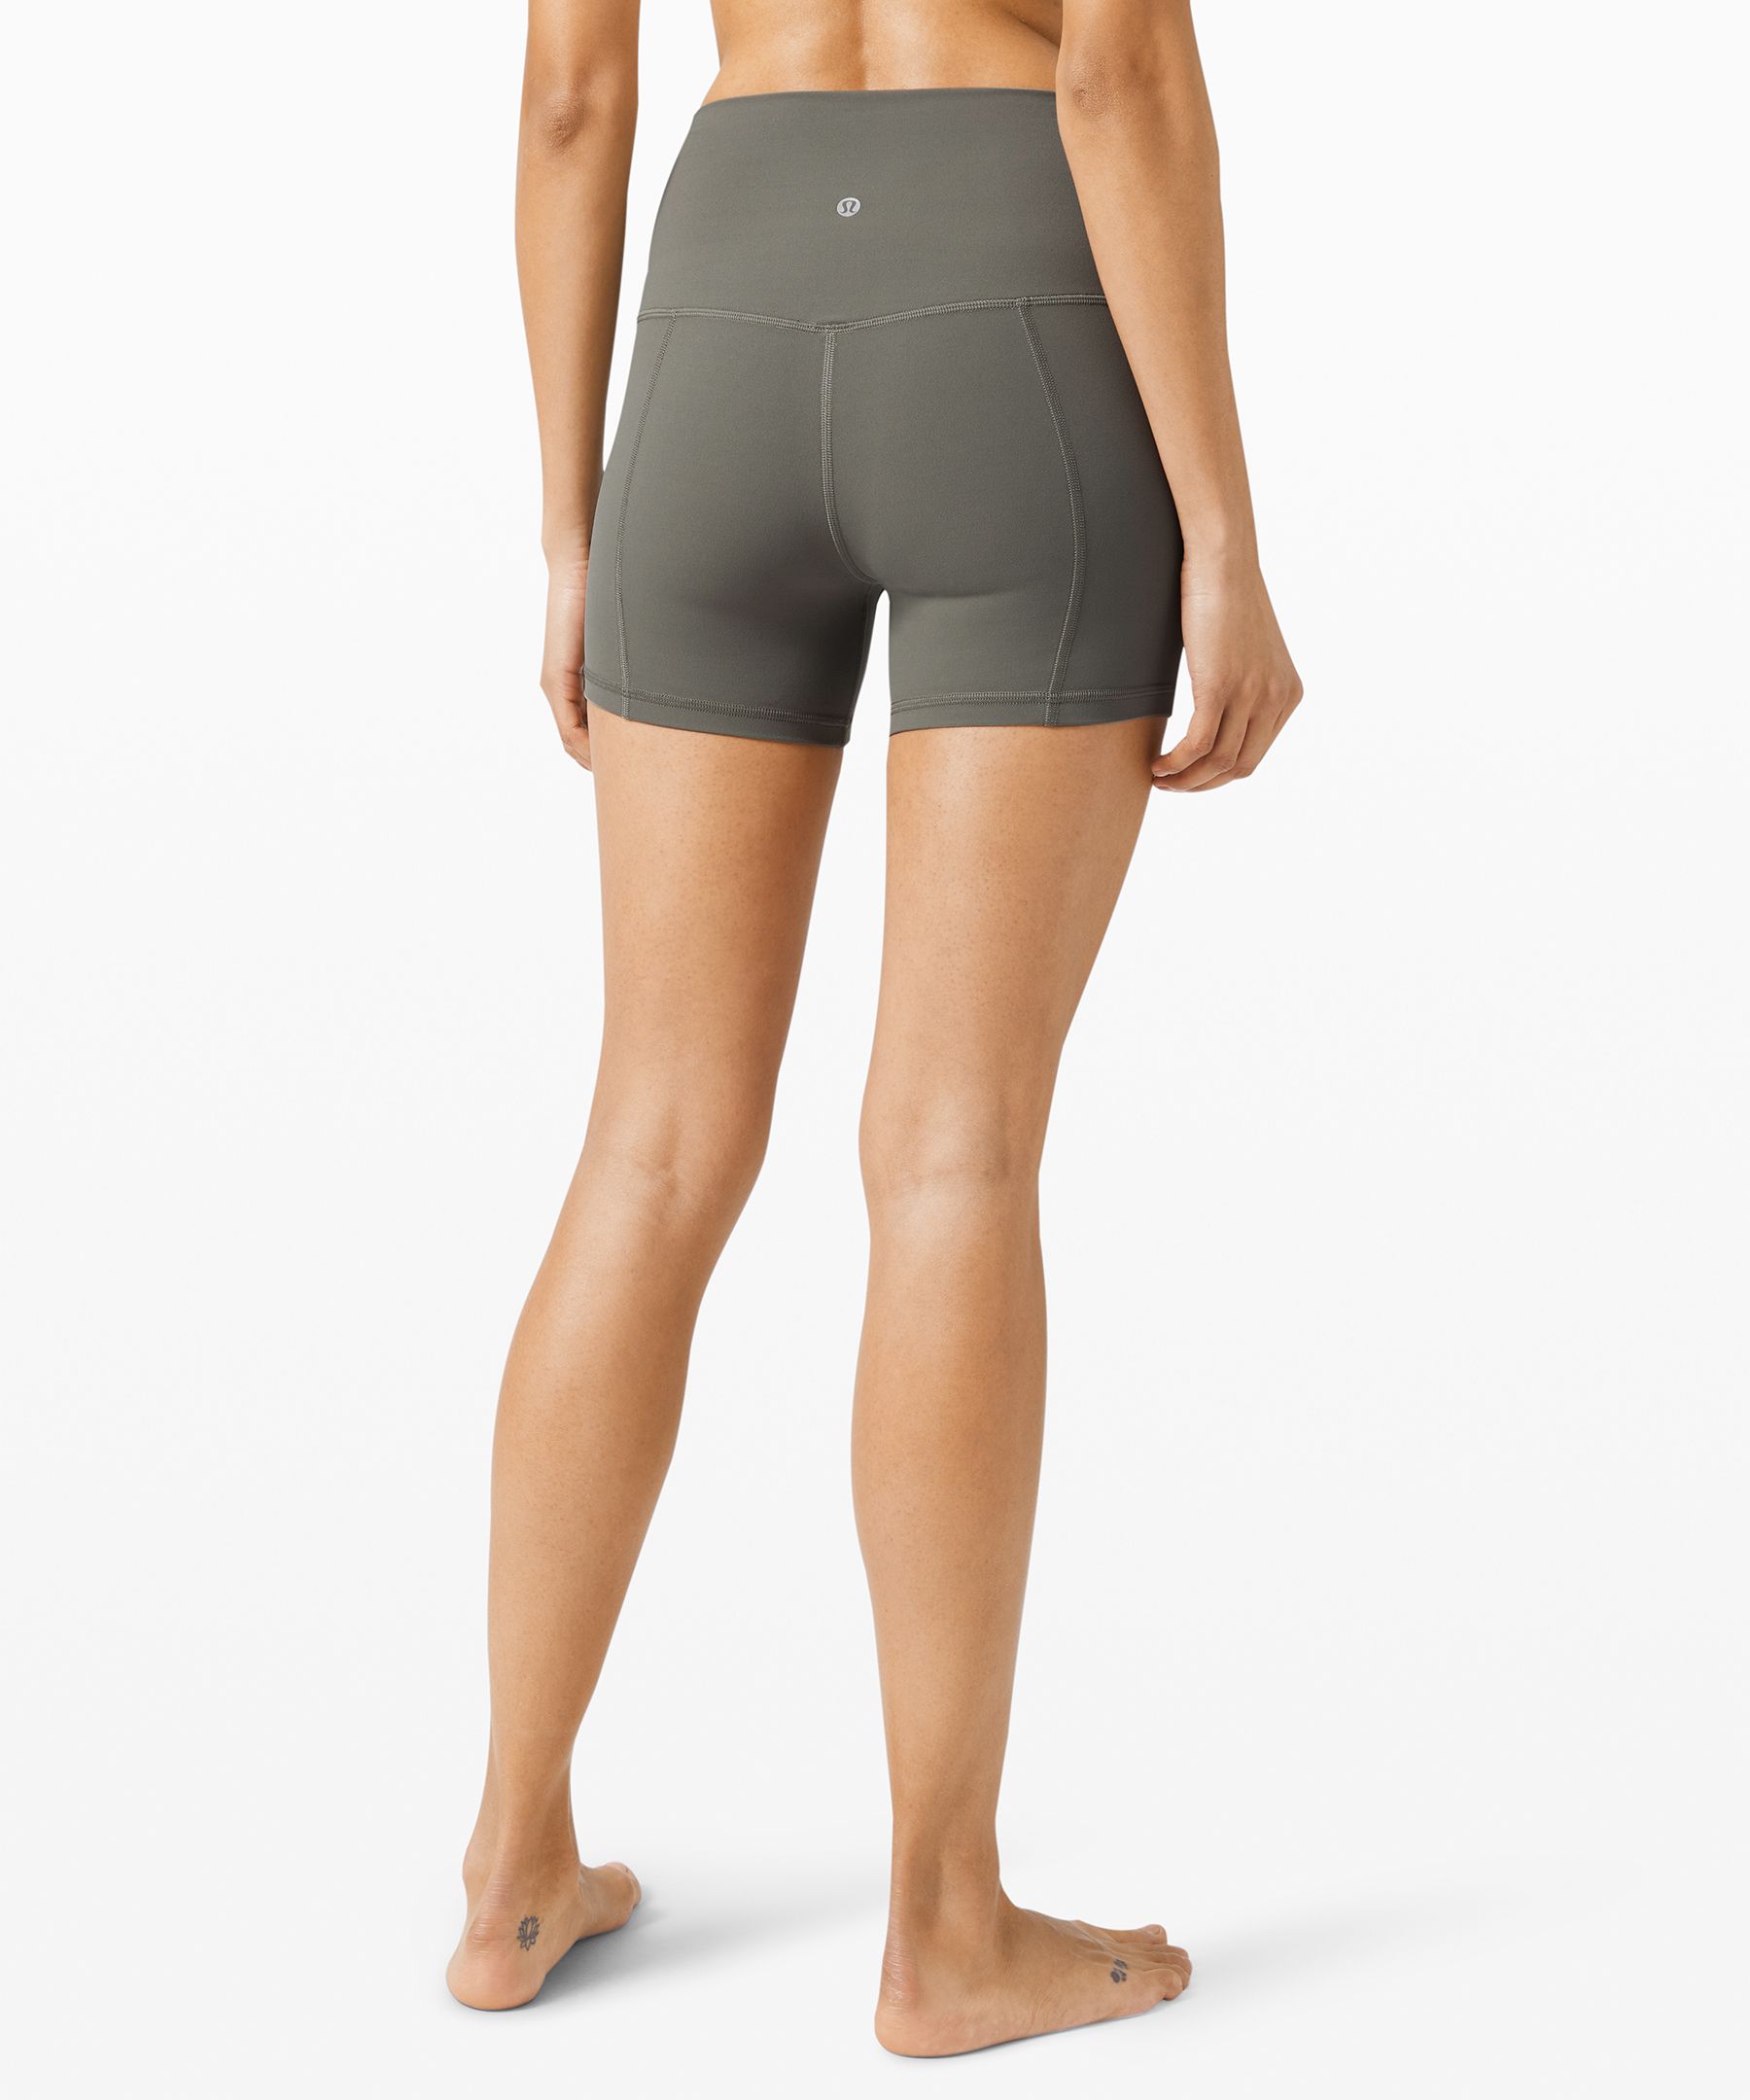 Lululemon Align™ High-rise Shorts 8 - Grey Sage